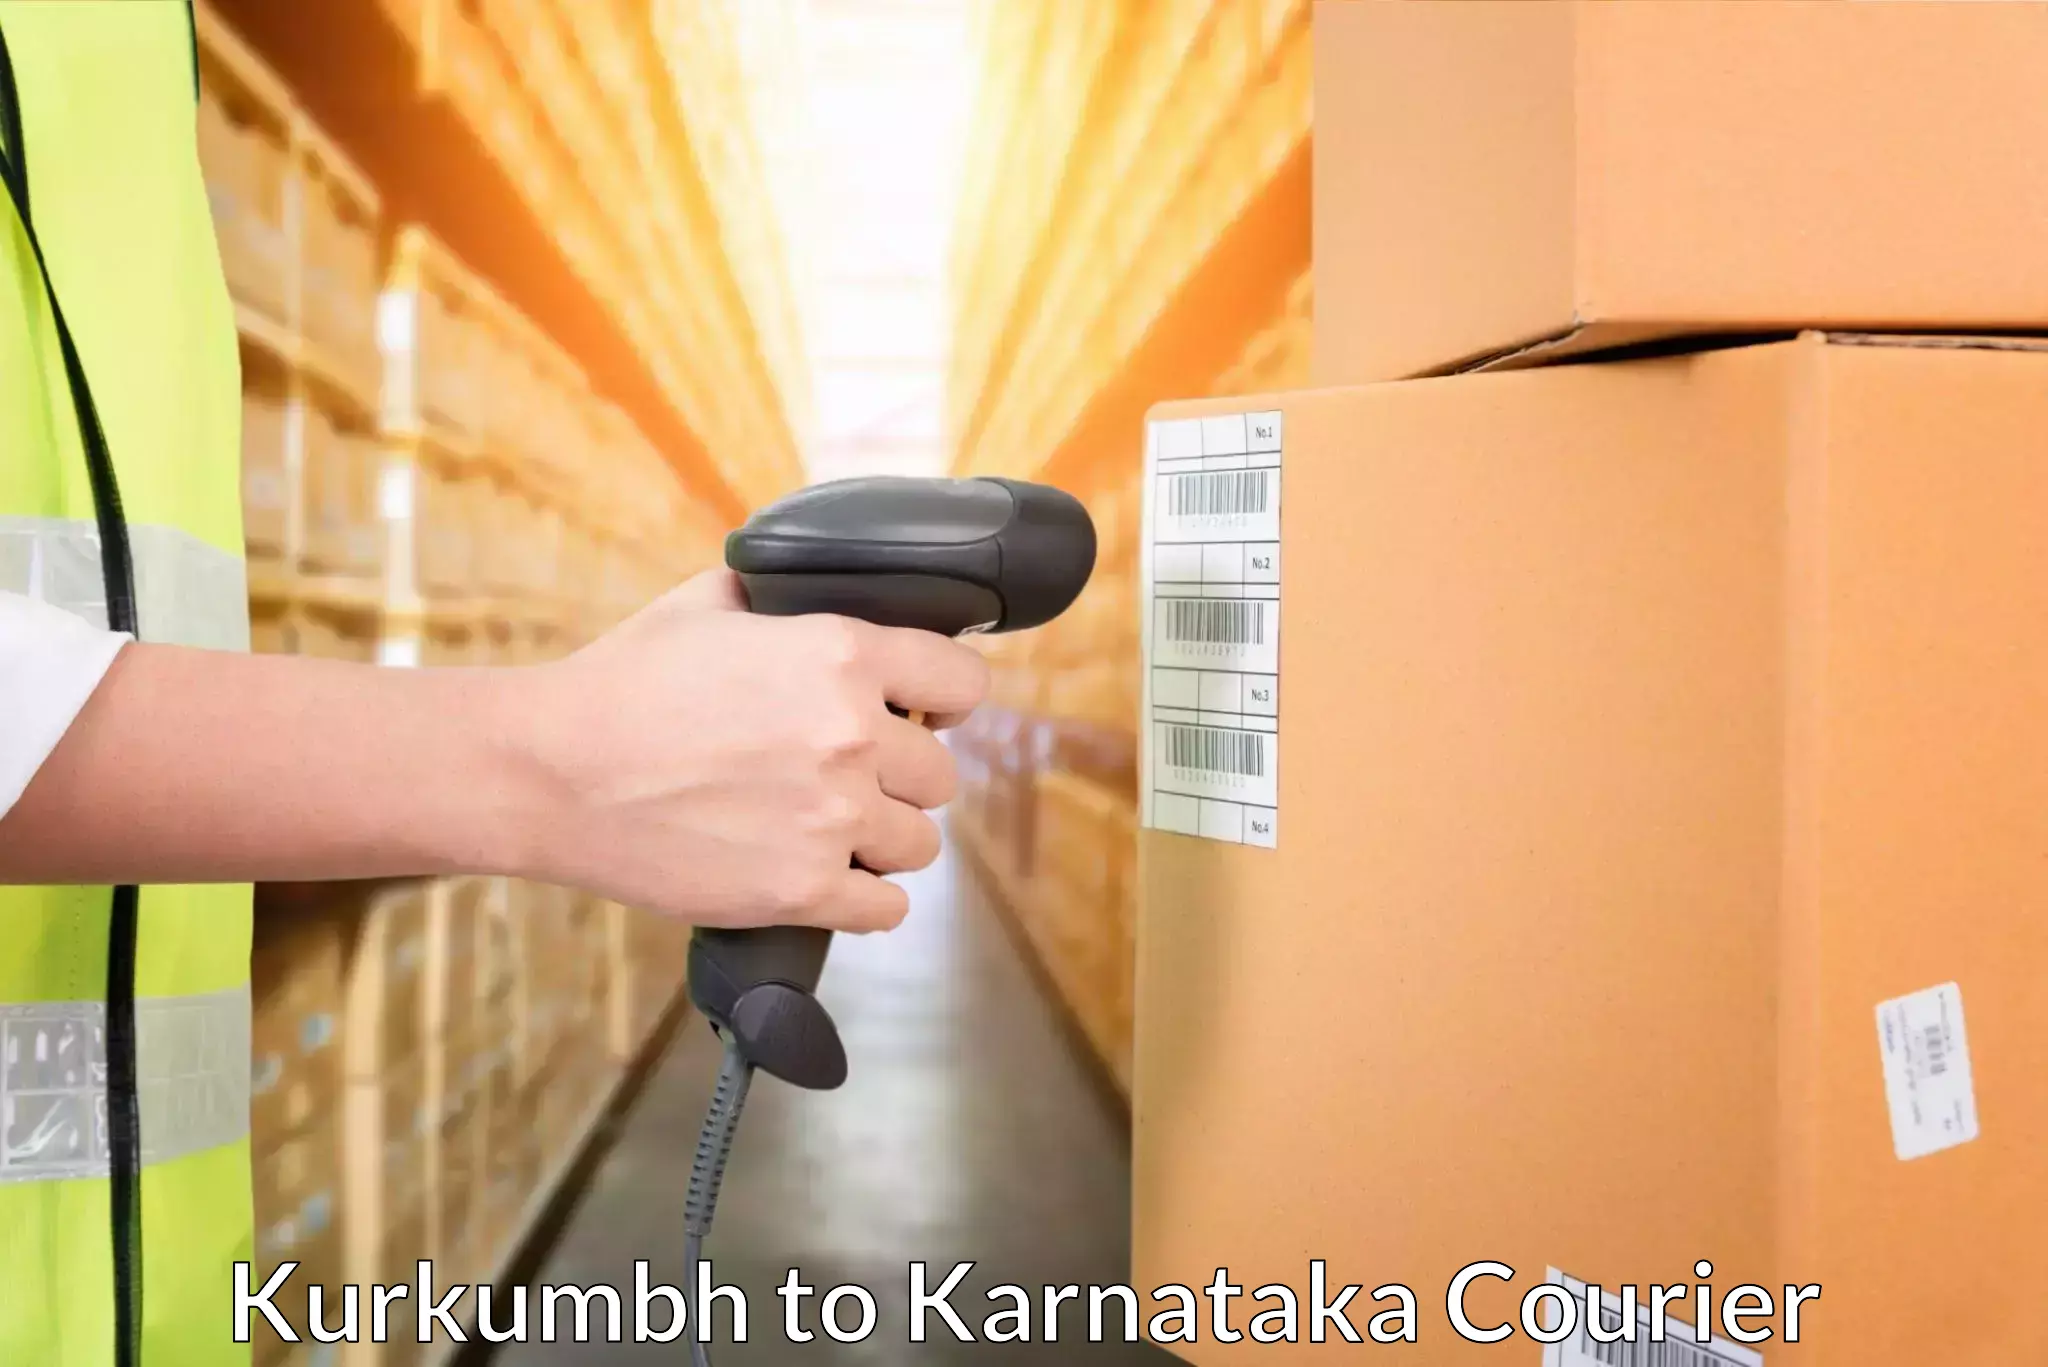 Dynamic courier operations in Kurkumbh to Karnataka